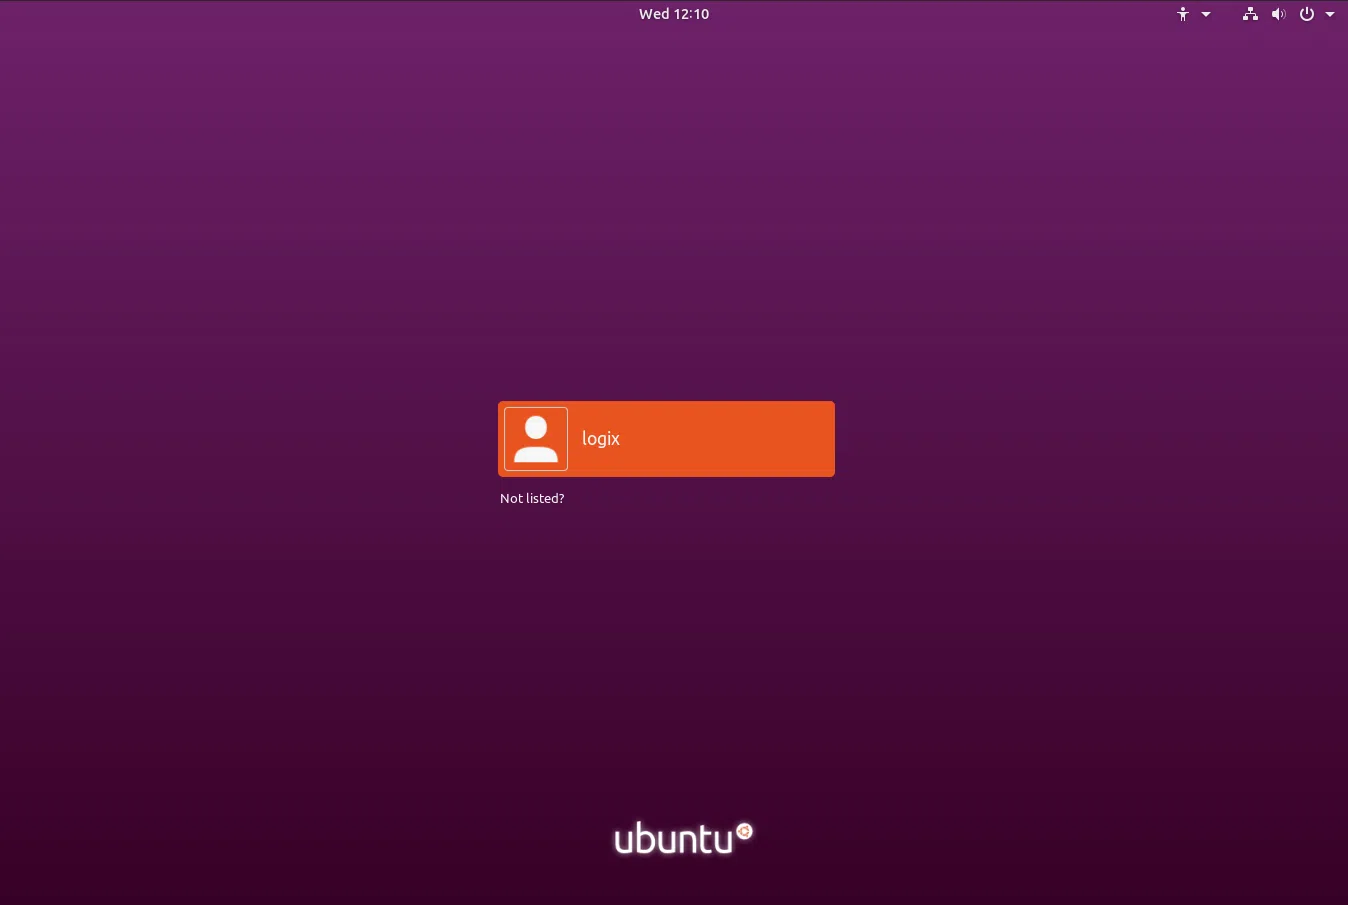 Captura de tela da tela de login do Ubuntu 18.10 Yaru